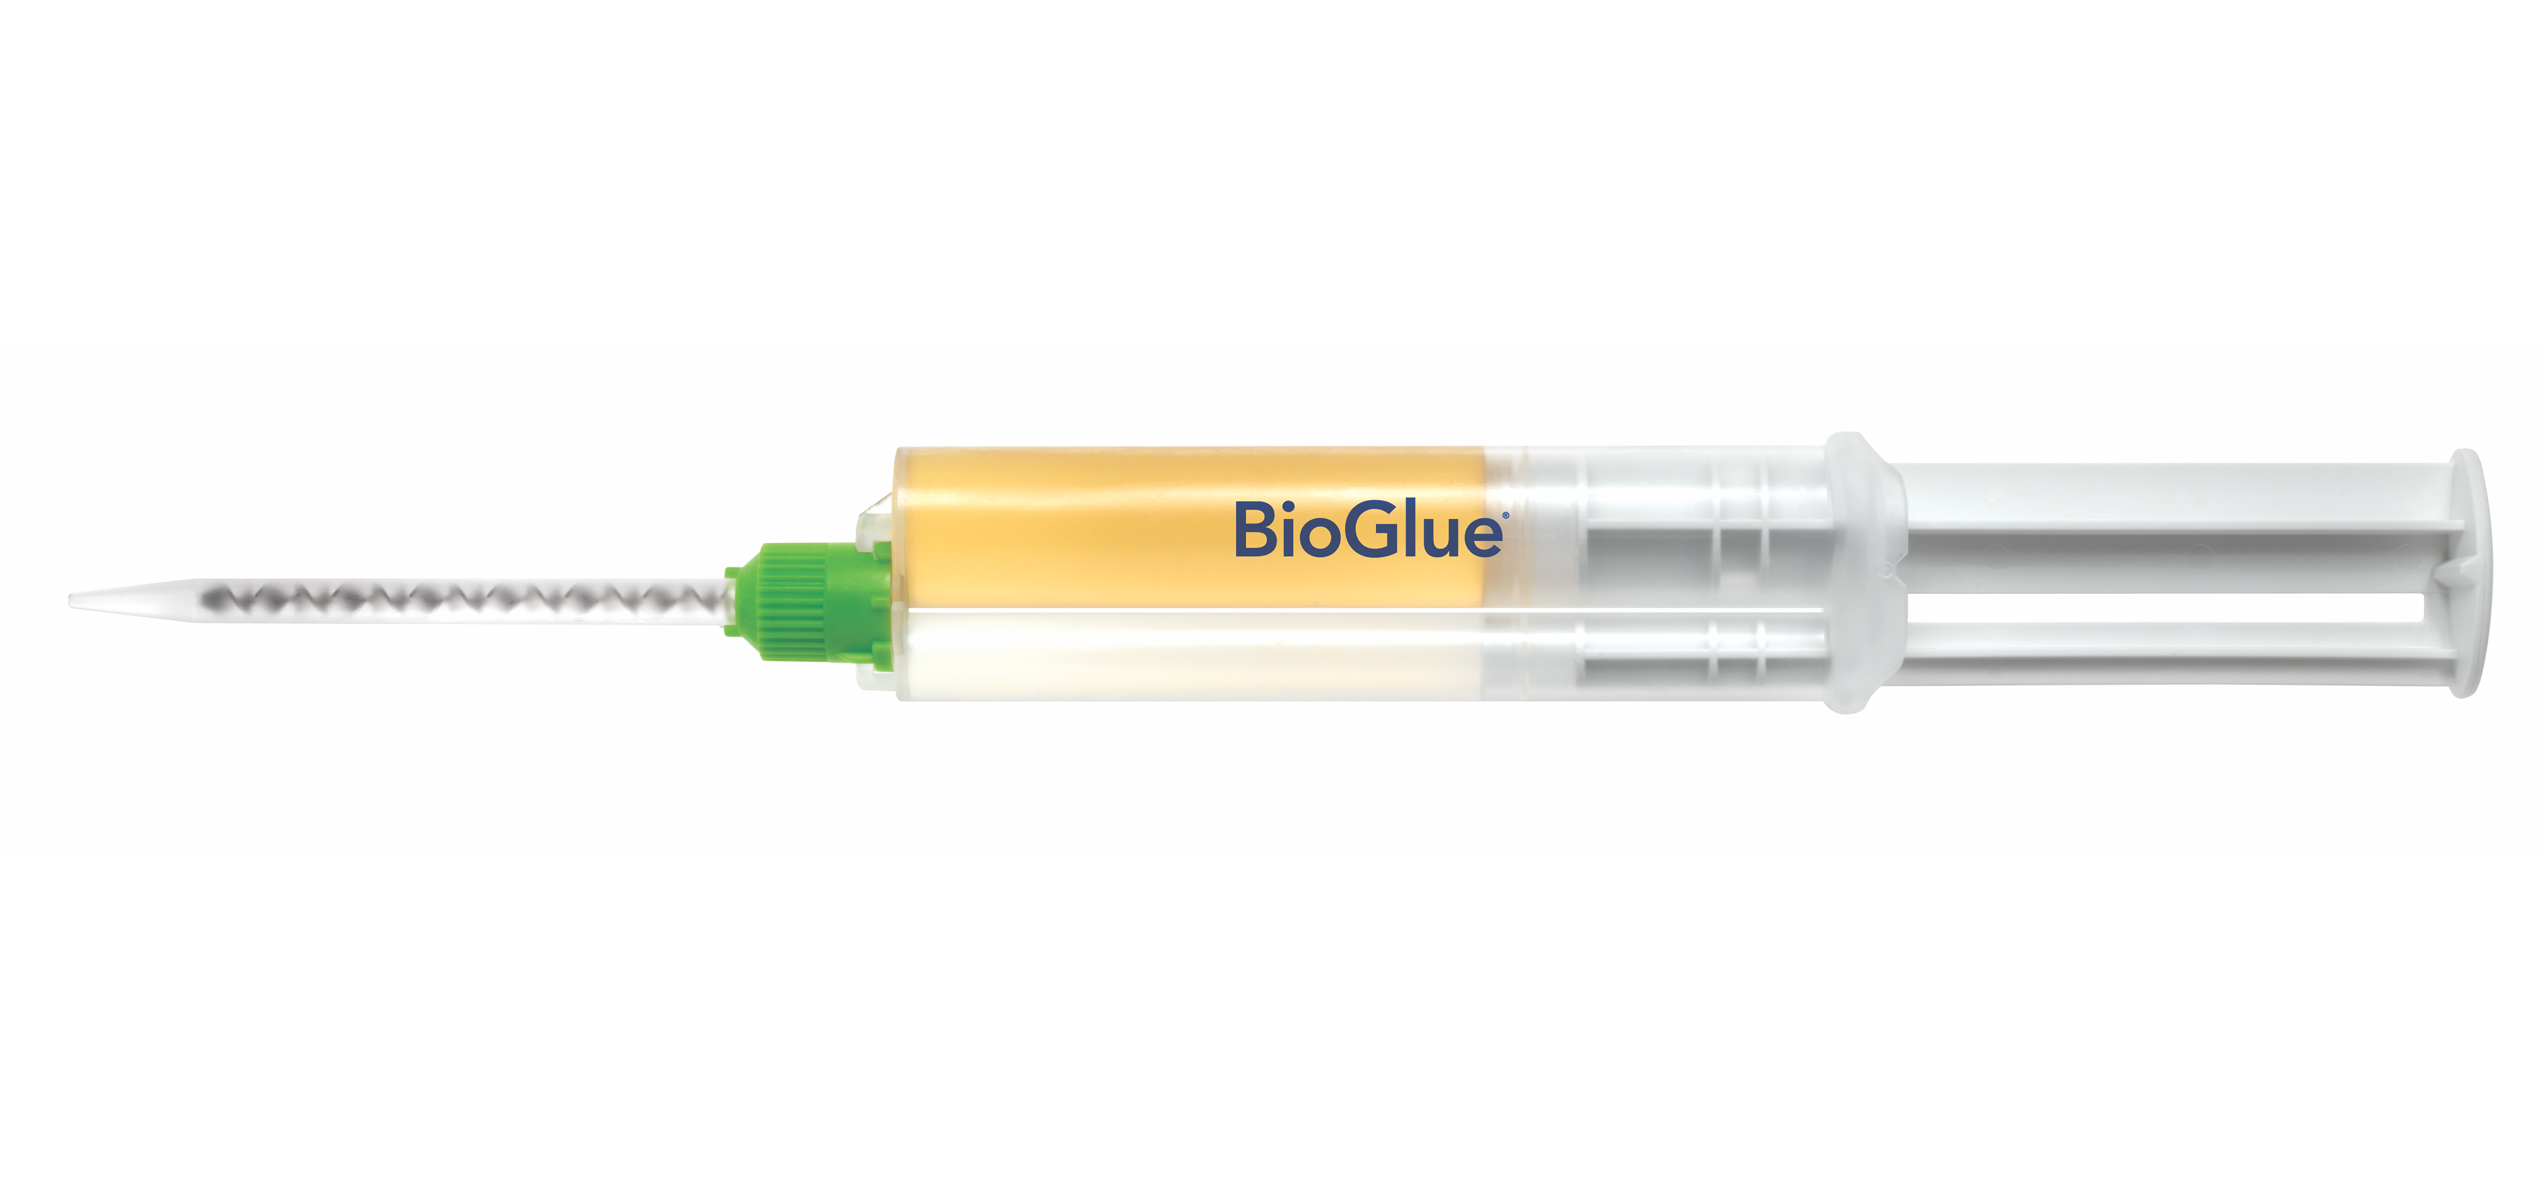 BioGlue Features